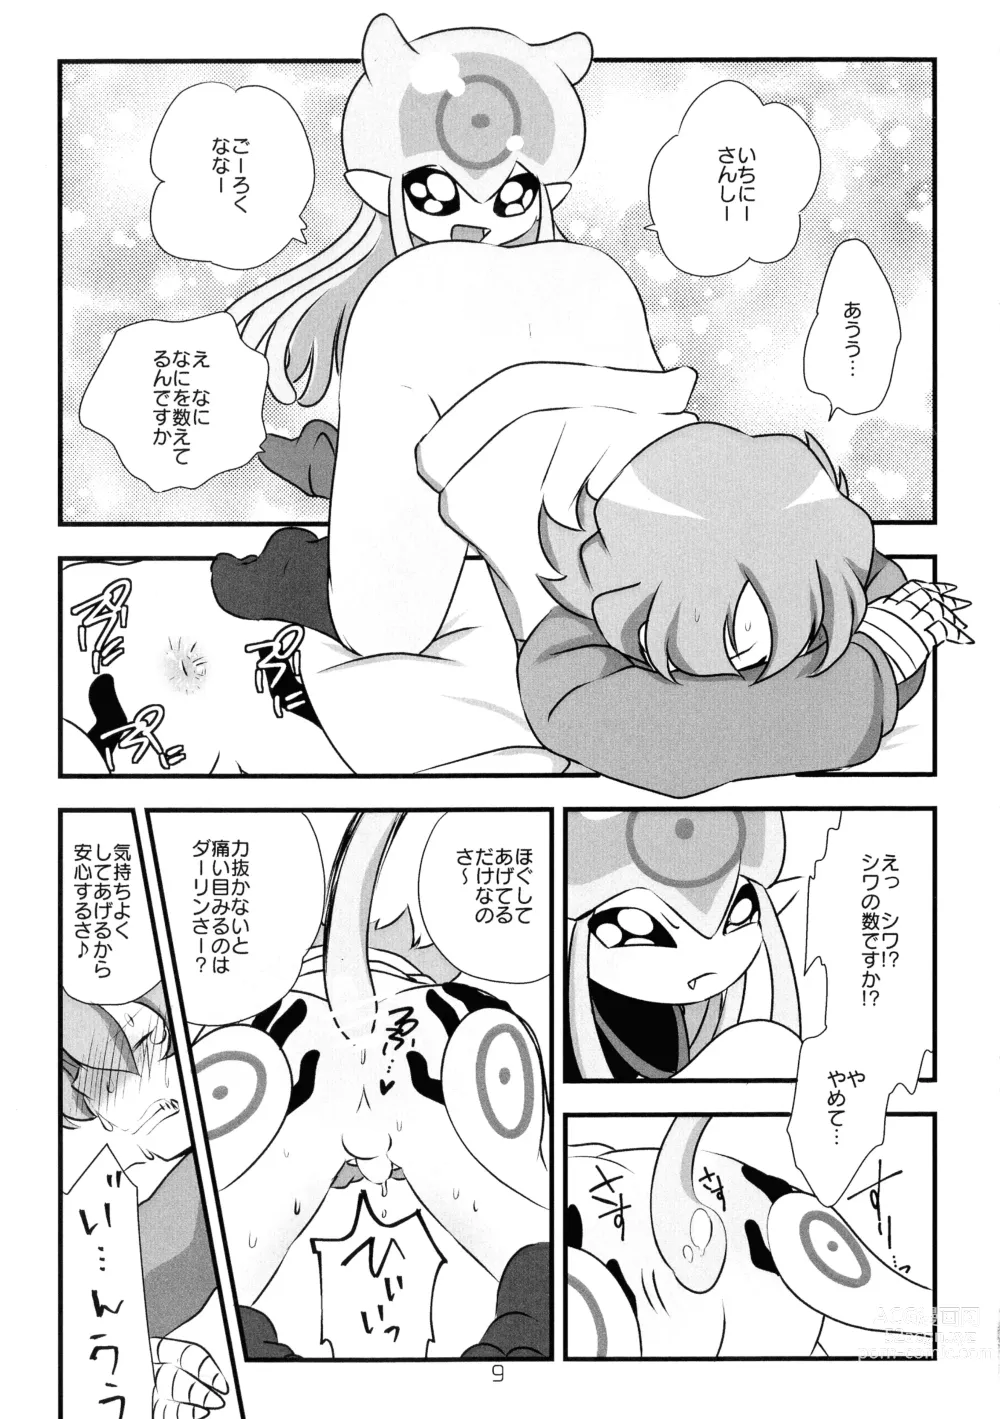 Page 10 of doujinshi Chusei kokoro ikusei gairon 2